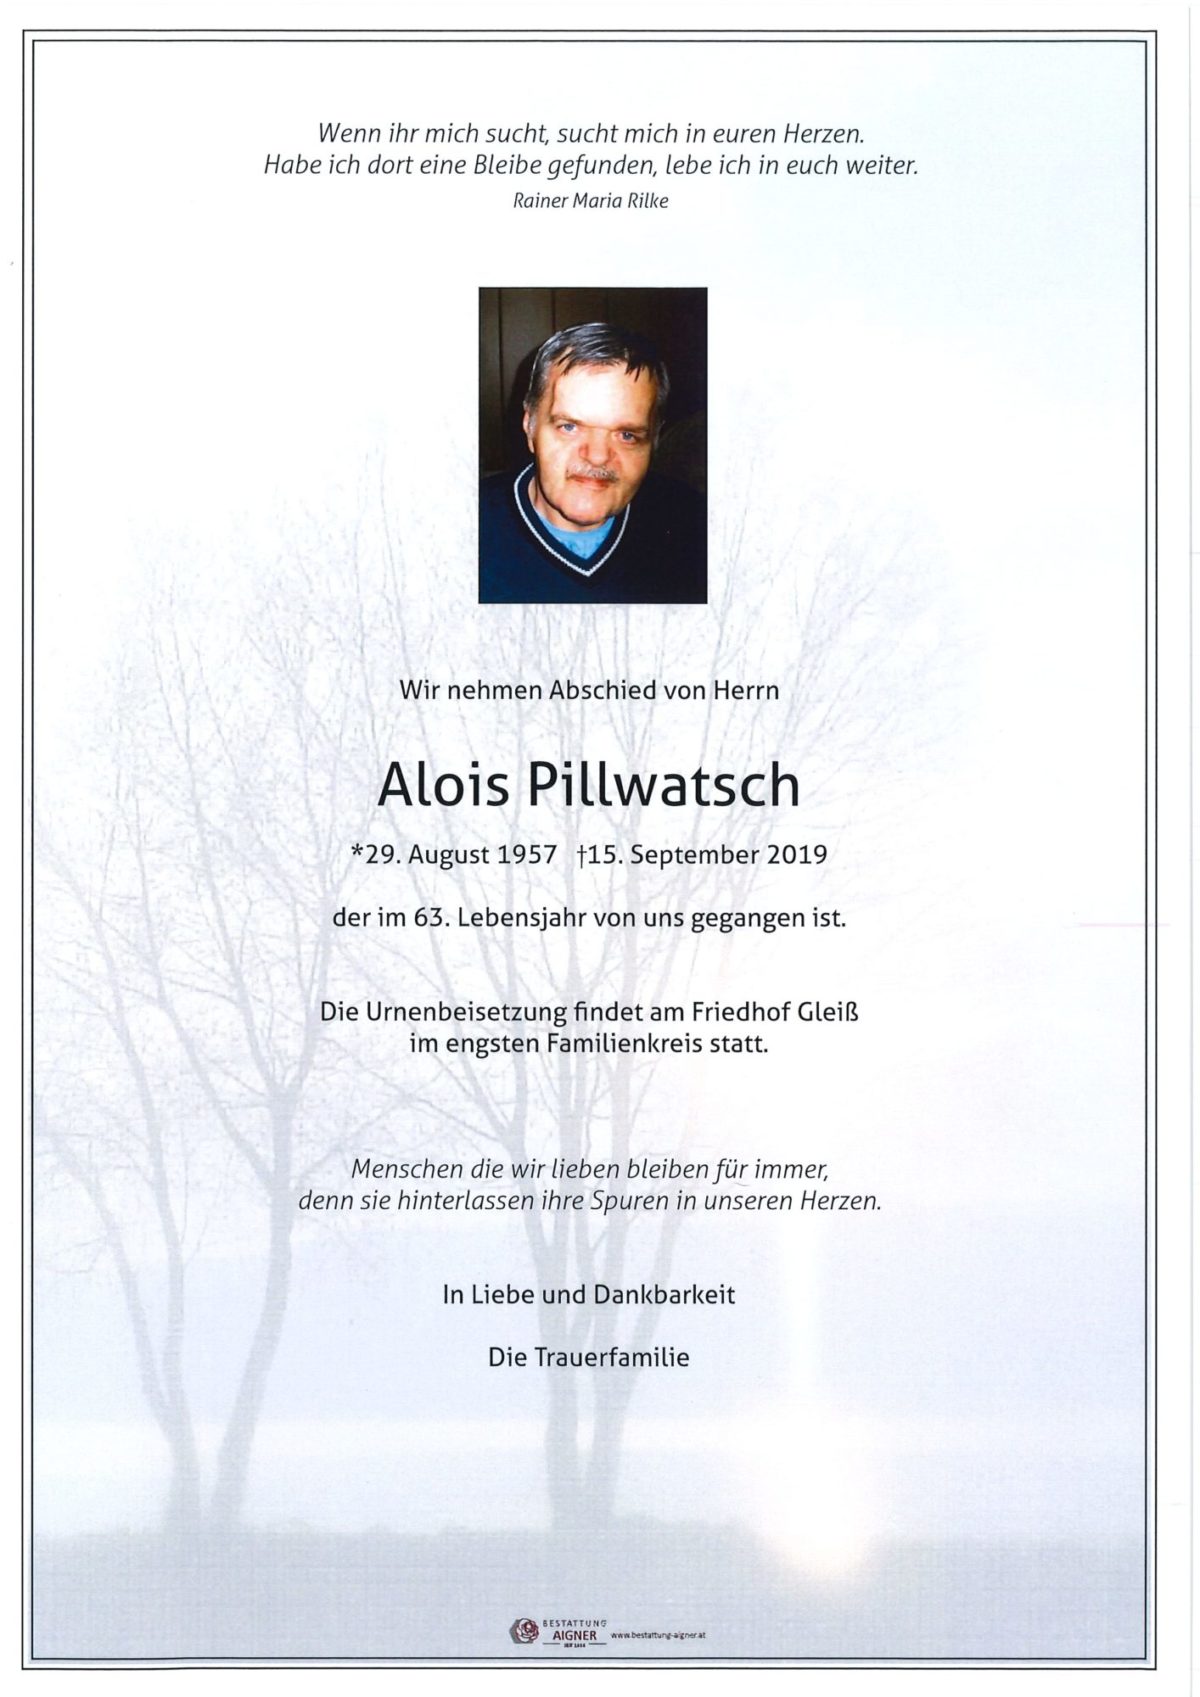 Alois Pillwatsch